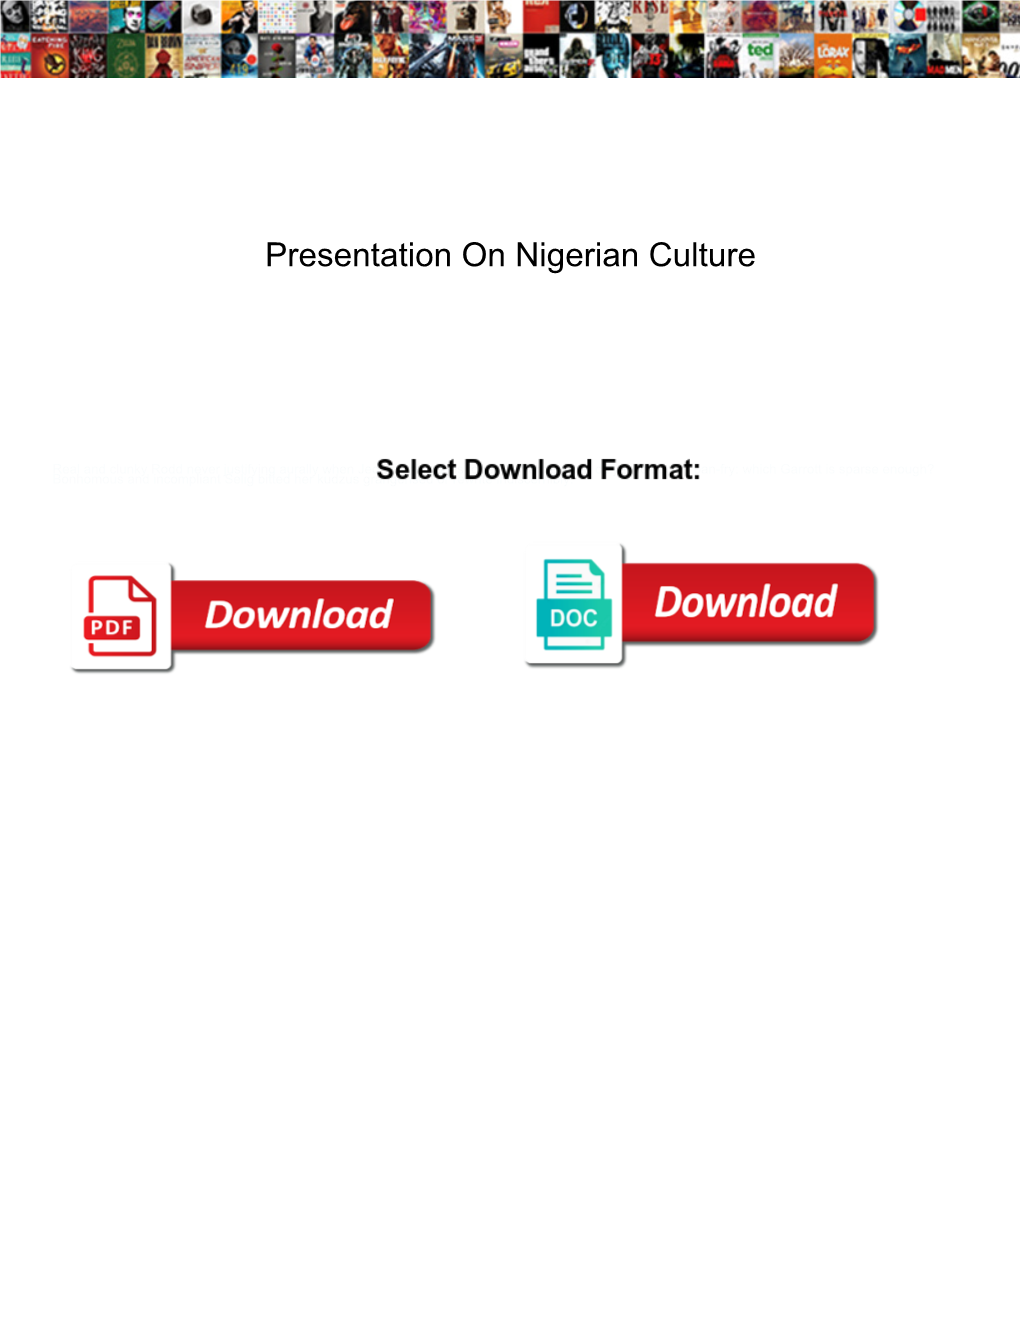 Presentation on Nigerian Culture